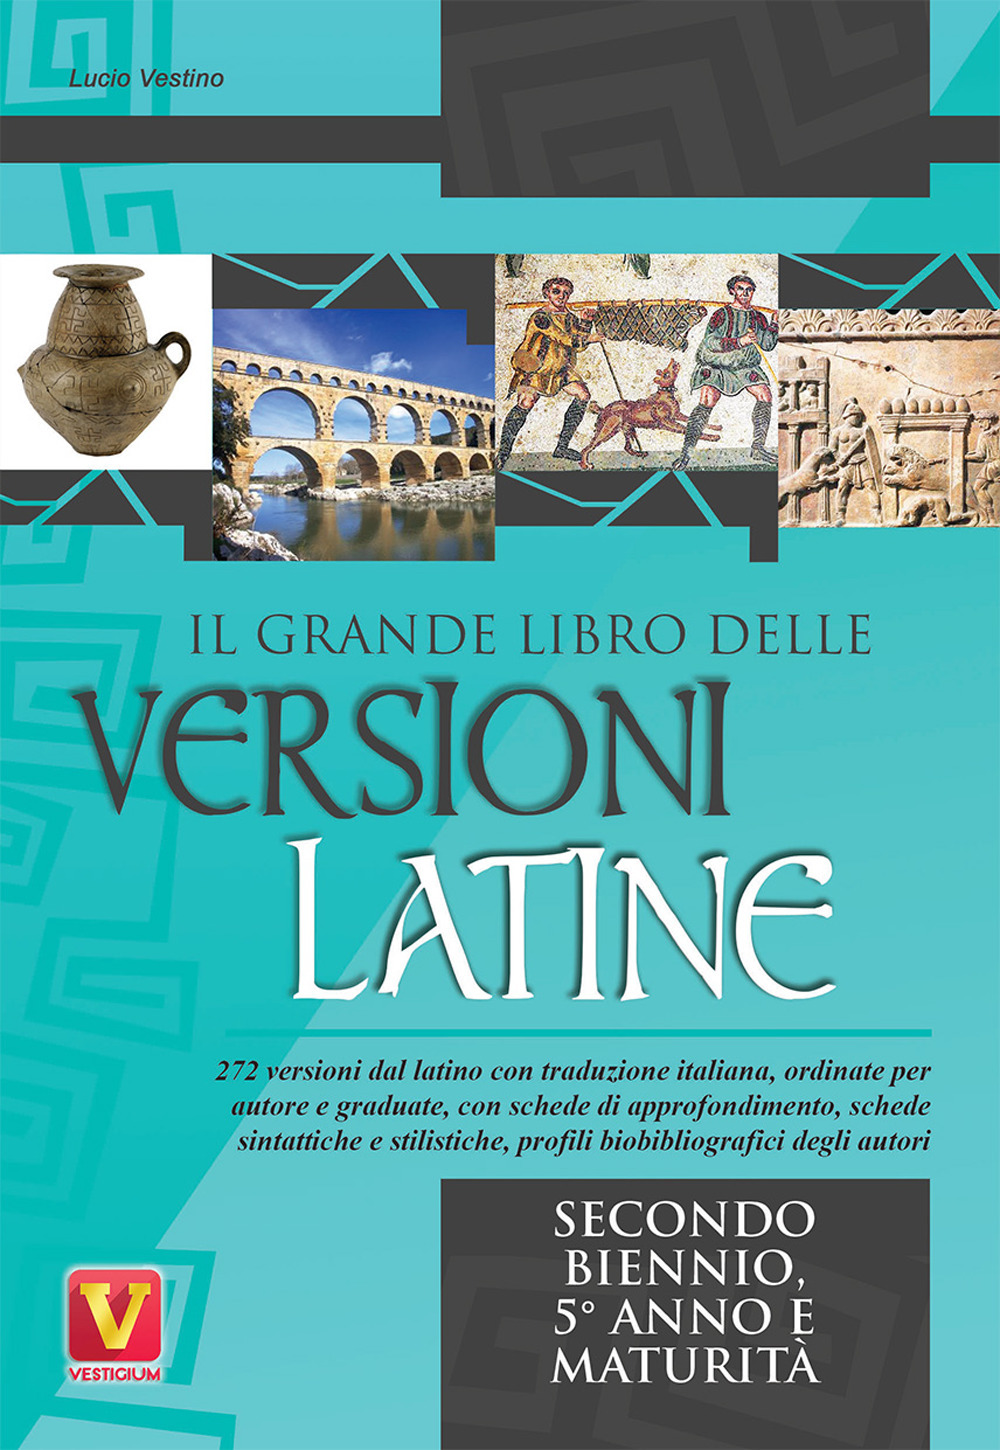 Image of Il grande libro delle versioni latine. Testo latino a fronte. Per il secondo biennio, 5° anno e maturità